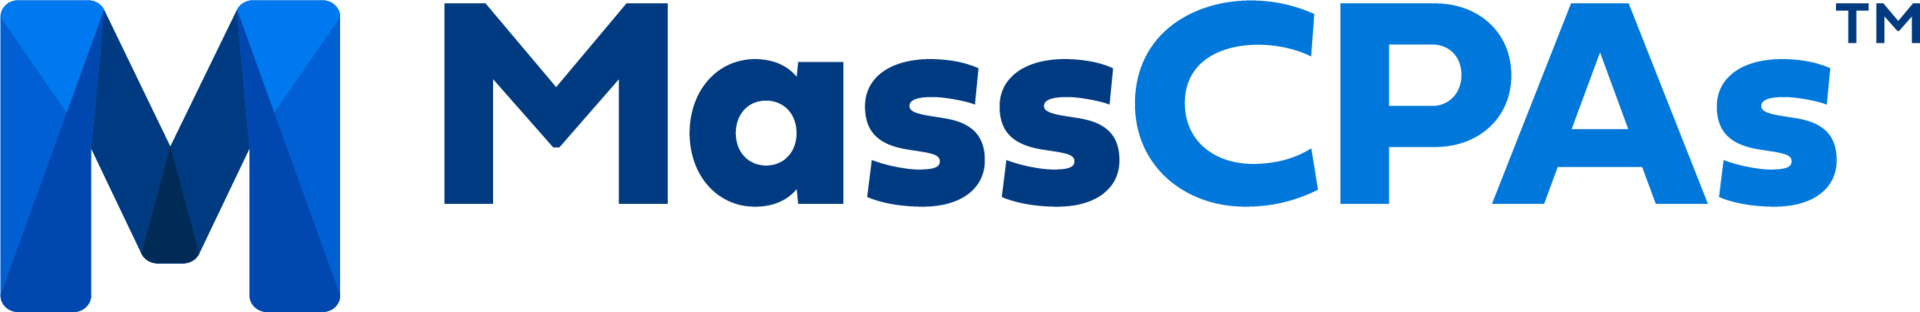 mscpa_blue_logo[1]